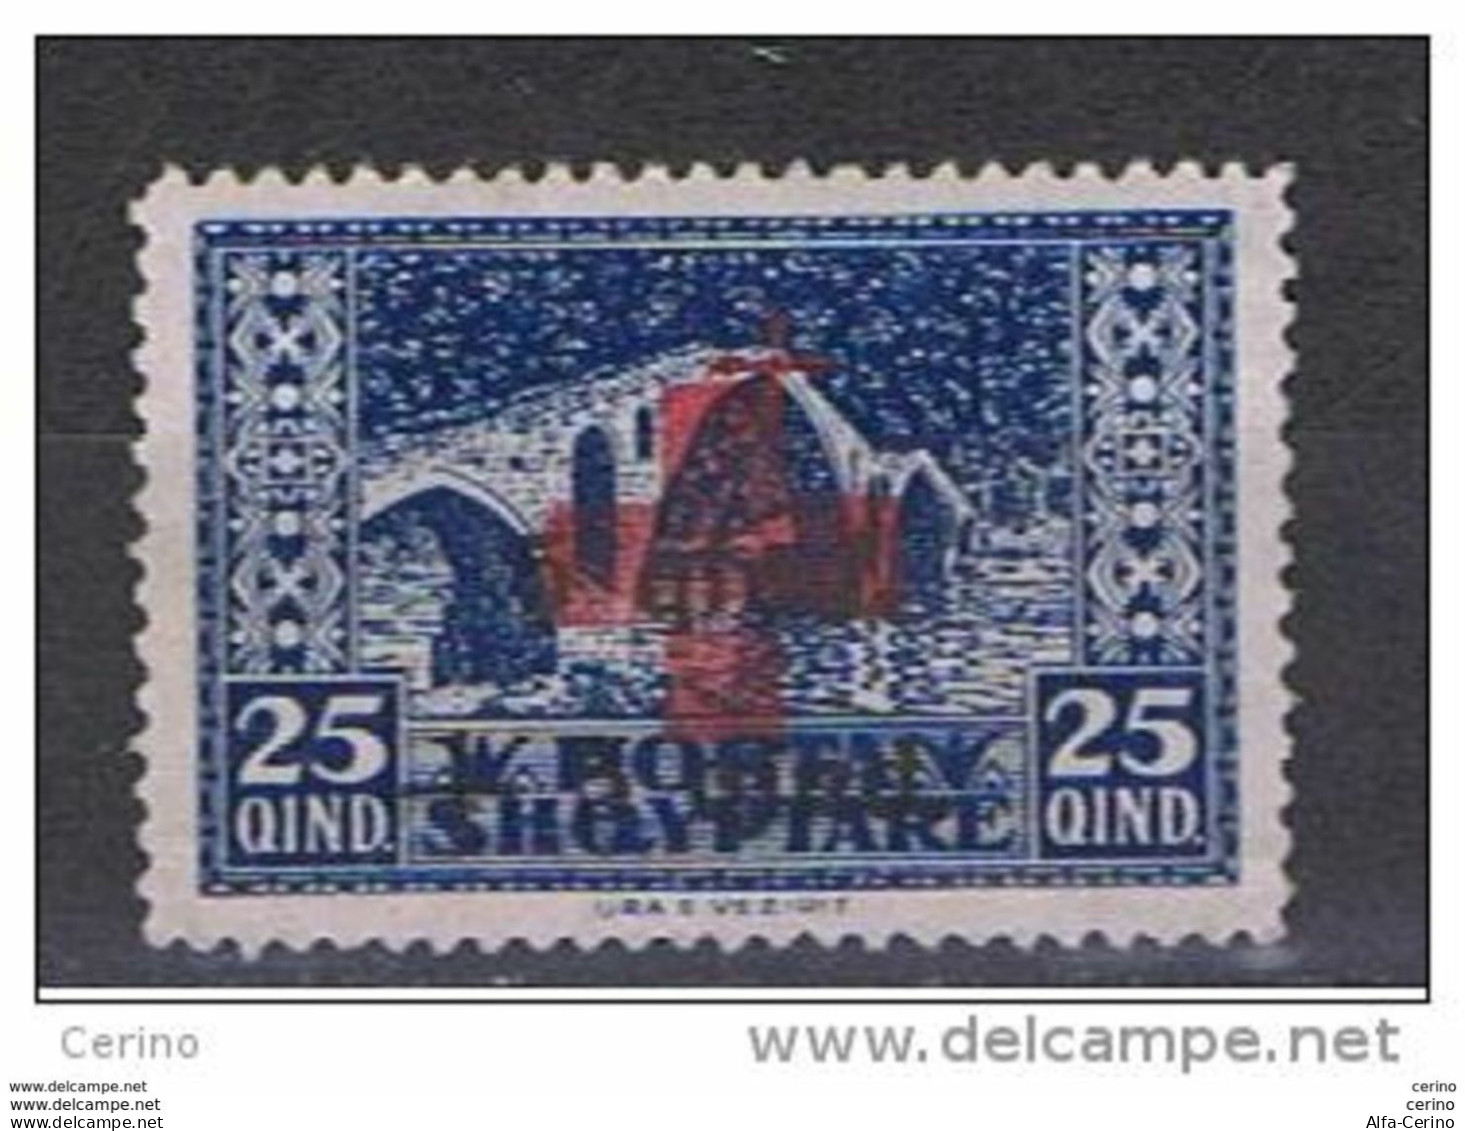 ALBANIA:  1924  SOPRASTAMPATO  -  15 Q. /5 Q. /25 Q. BLU  S.G. -  YV/TELL. 142 - Albanien